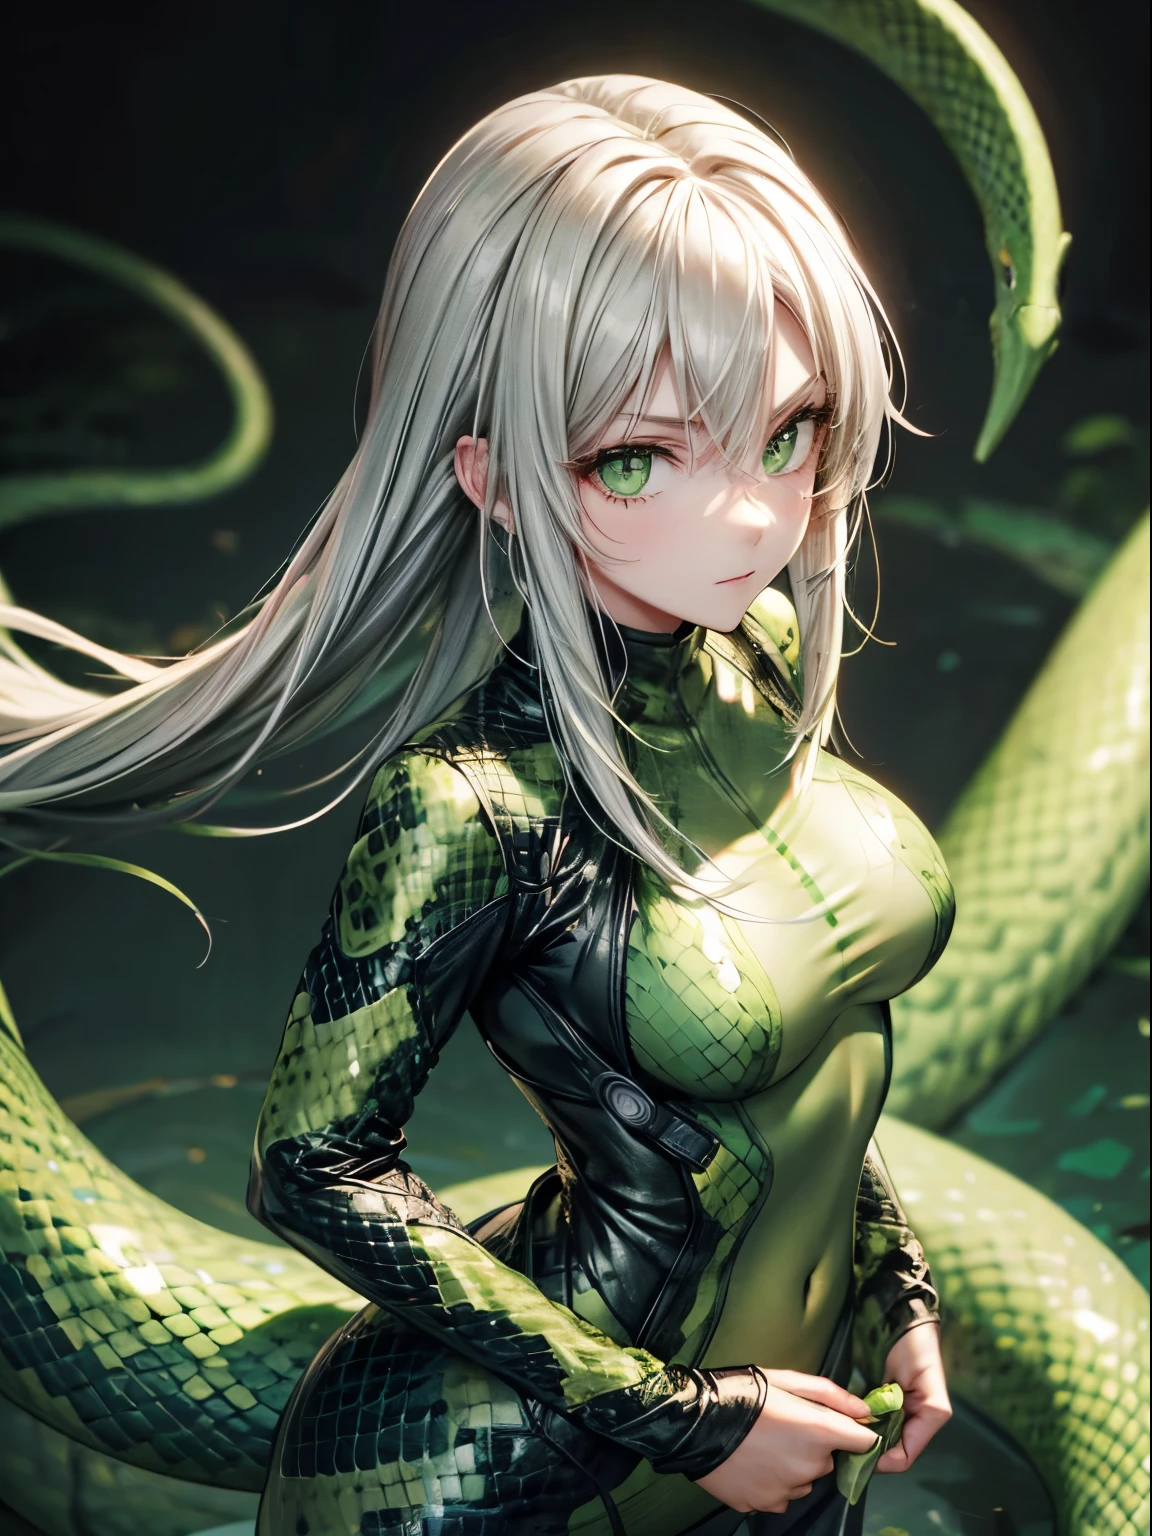 蛇女,蛇色連體衣, 綠色的,綠色的 eyes, 蛇眼, 白頭髮, 沒有表情